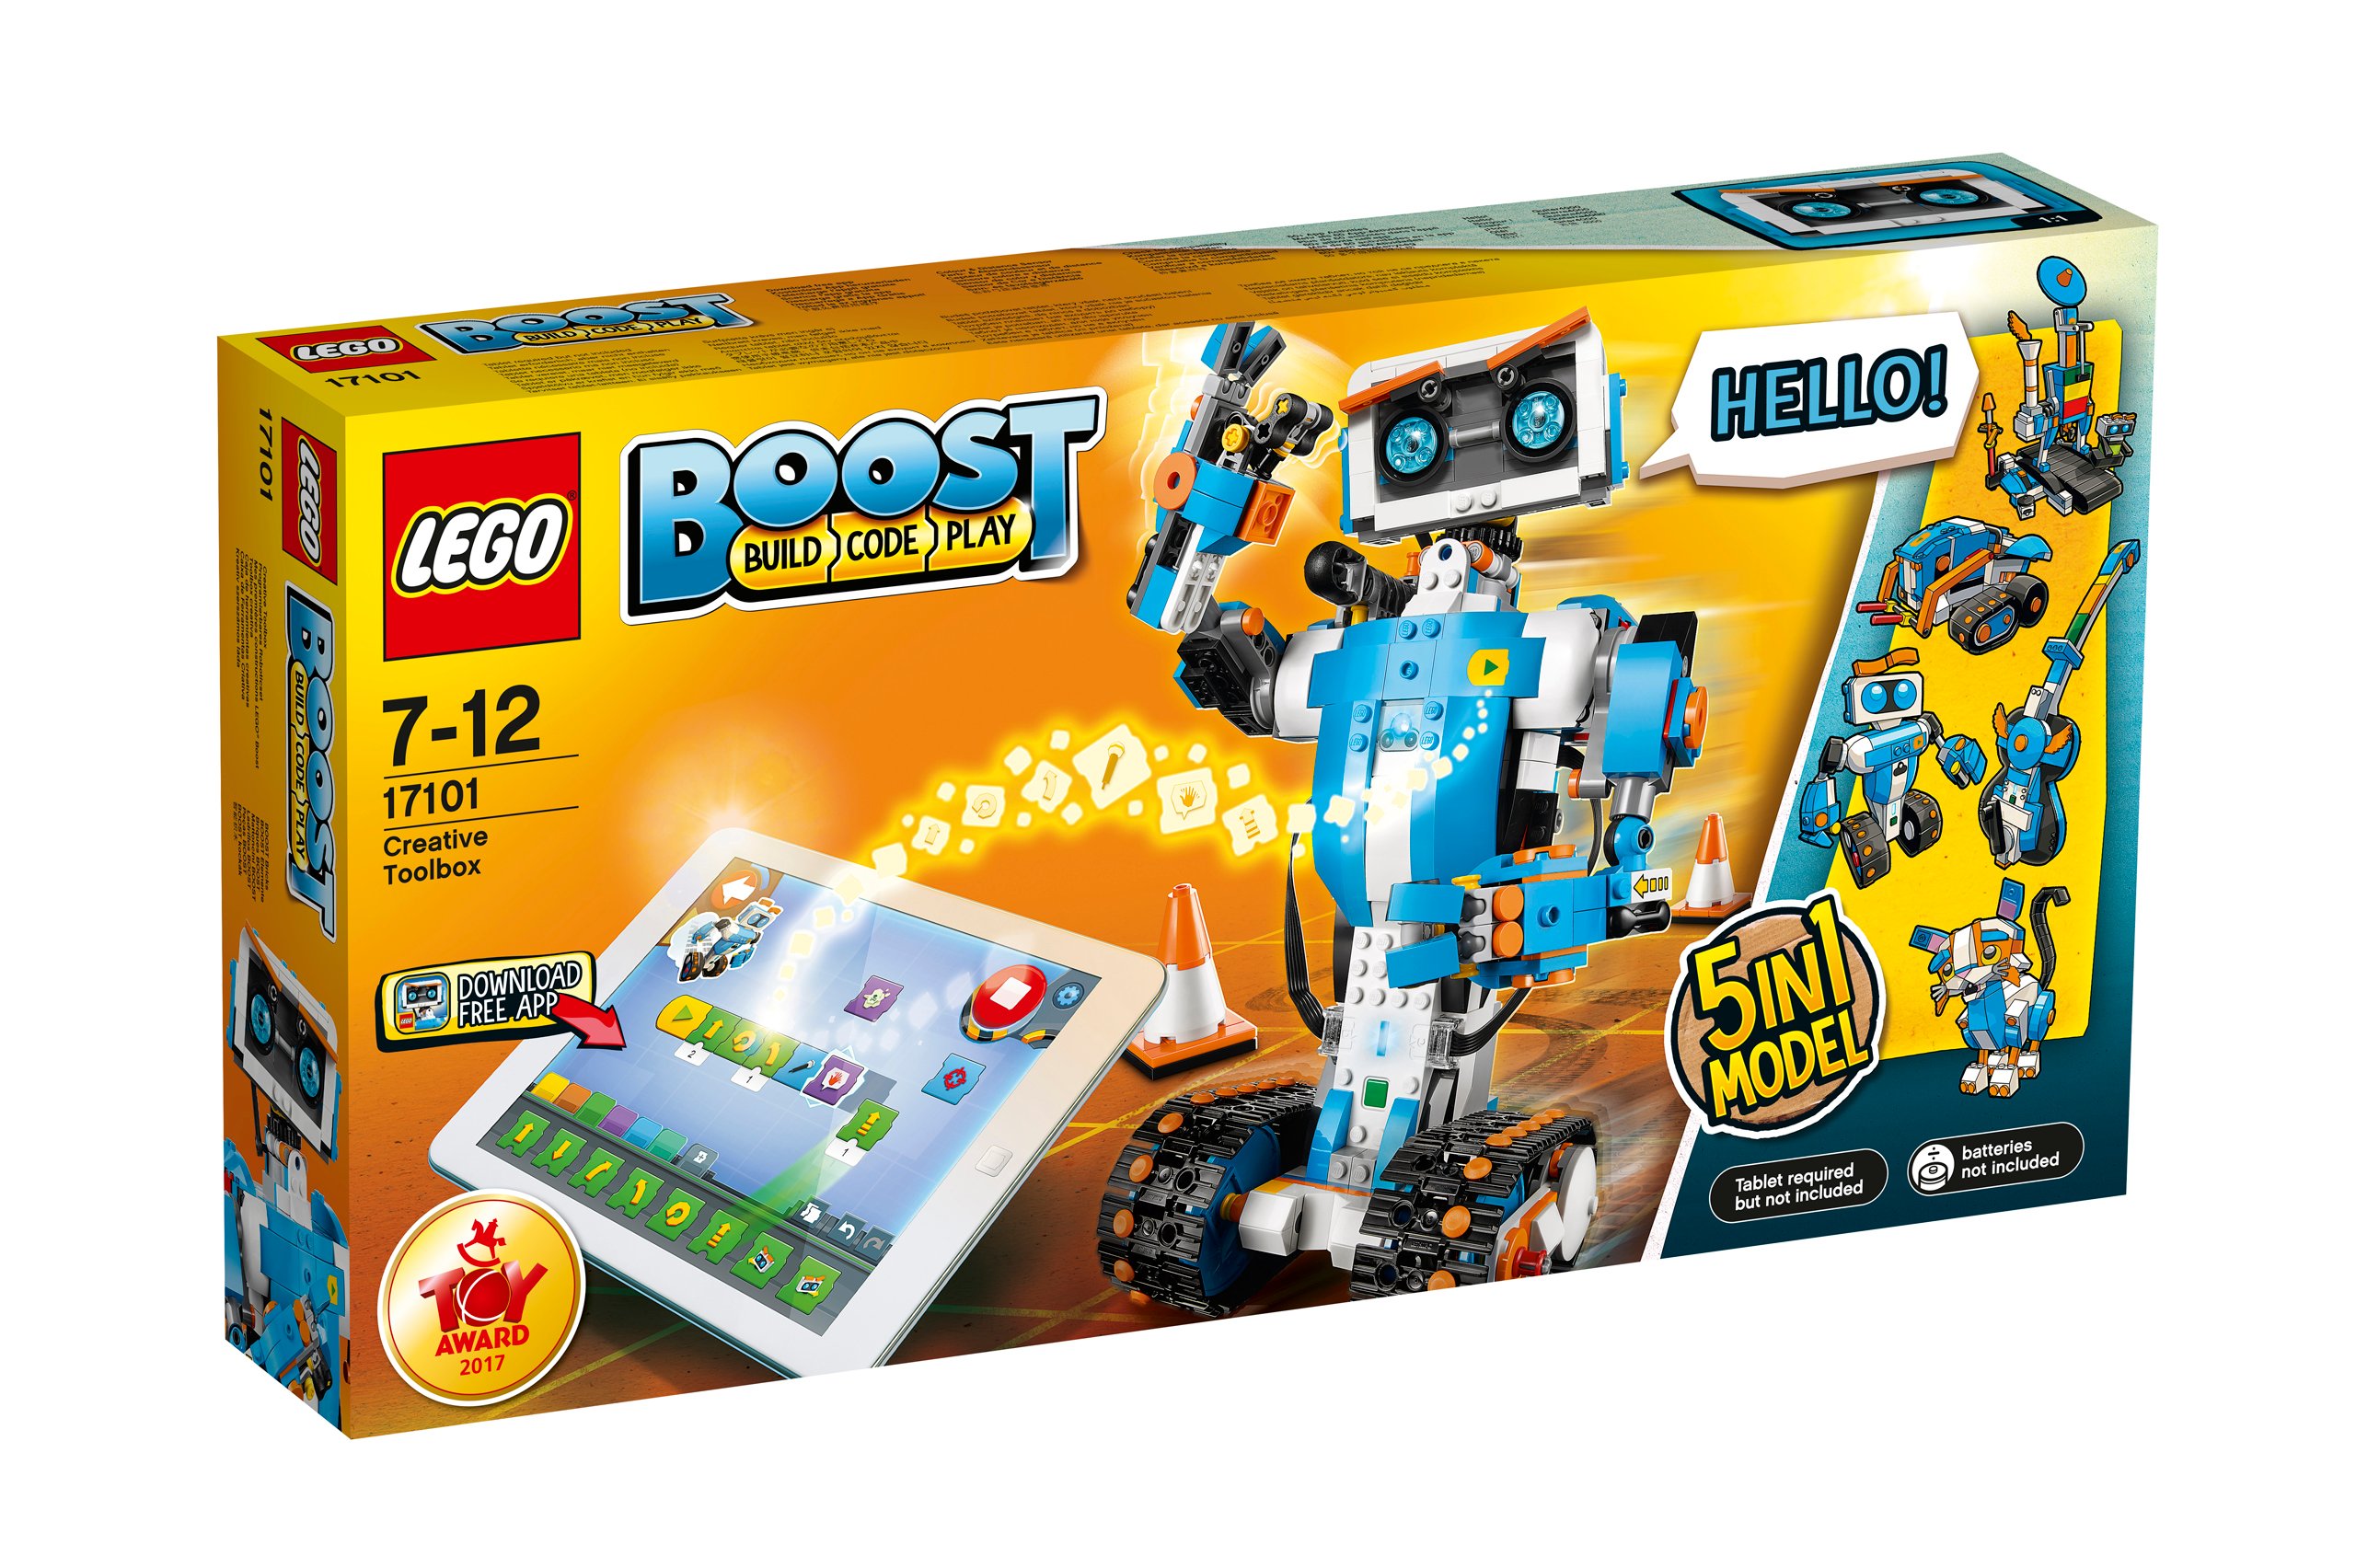 LEGO Boost Zestaw kreatywny 5w1 17101